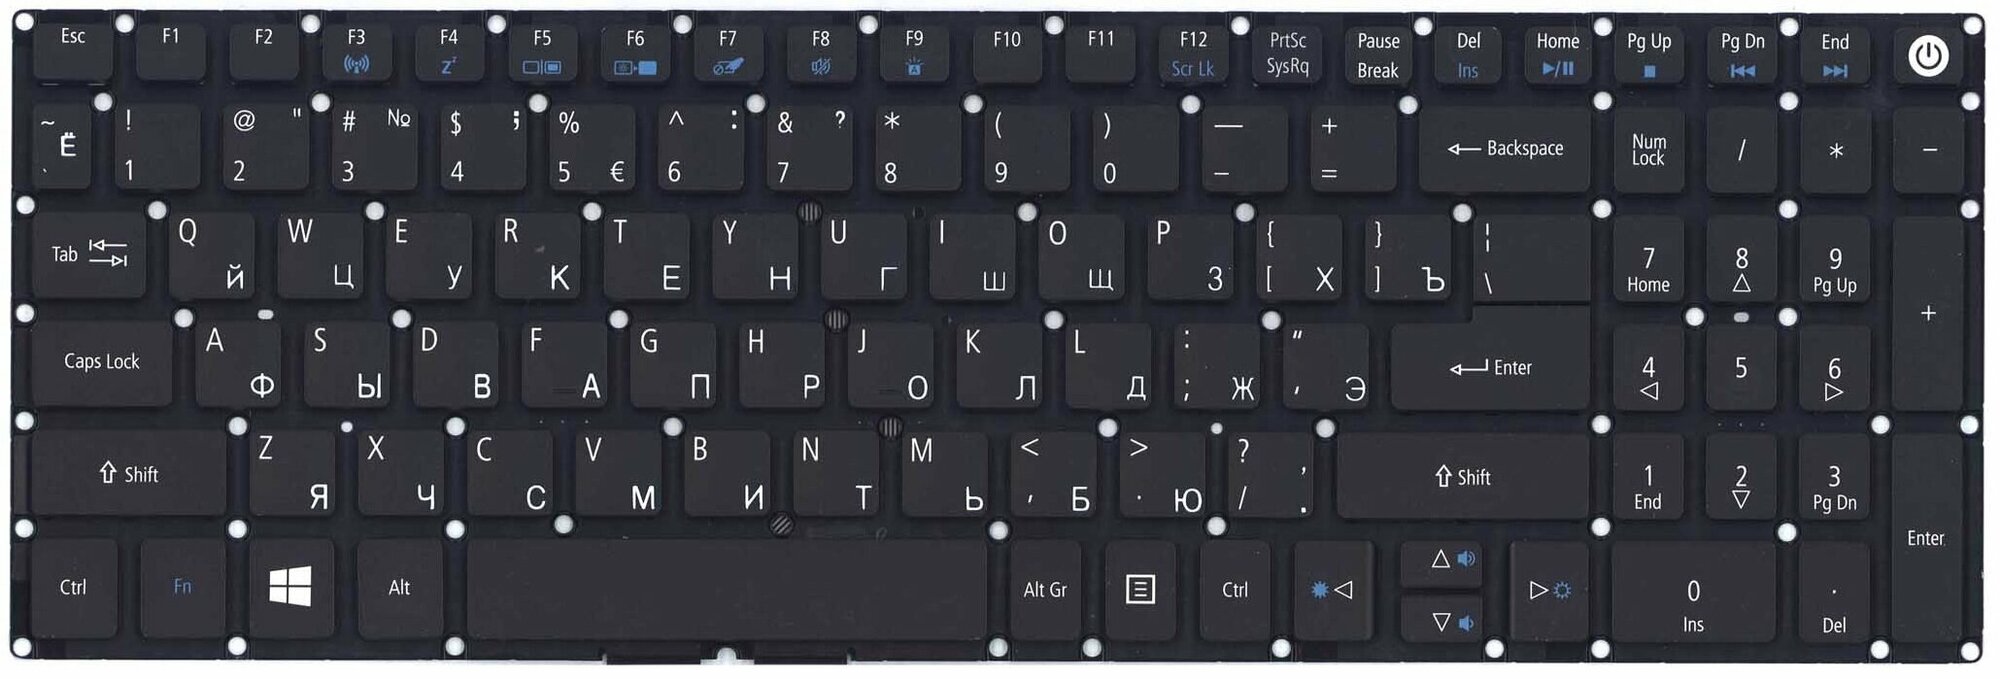 Клавиатура для ноутбука Acer Aspire F5-571